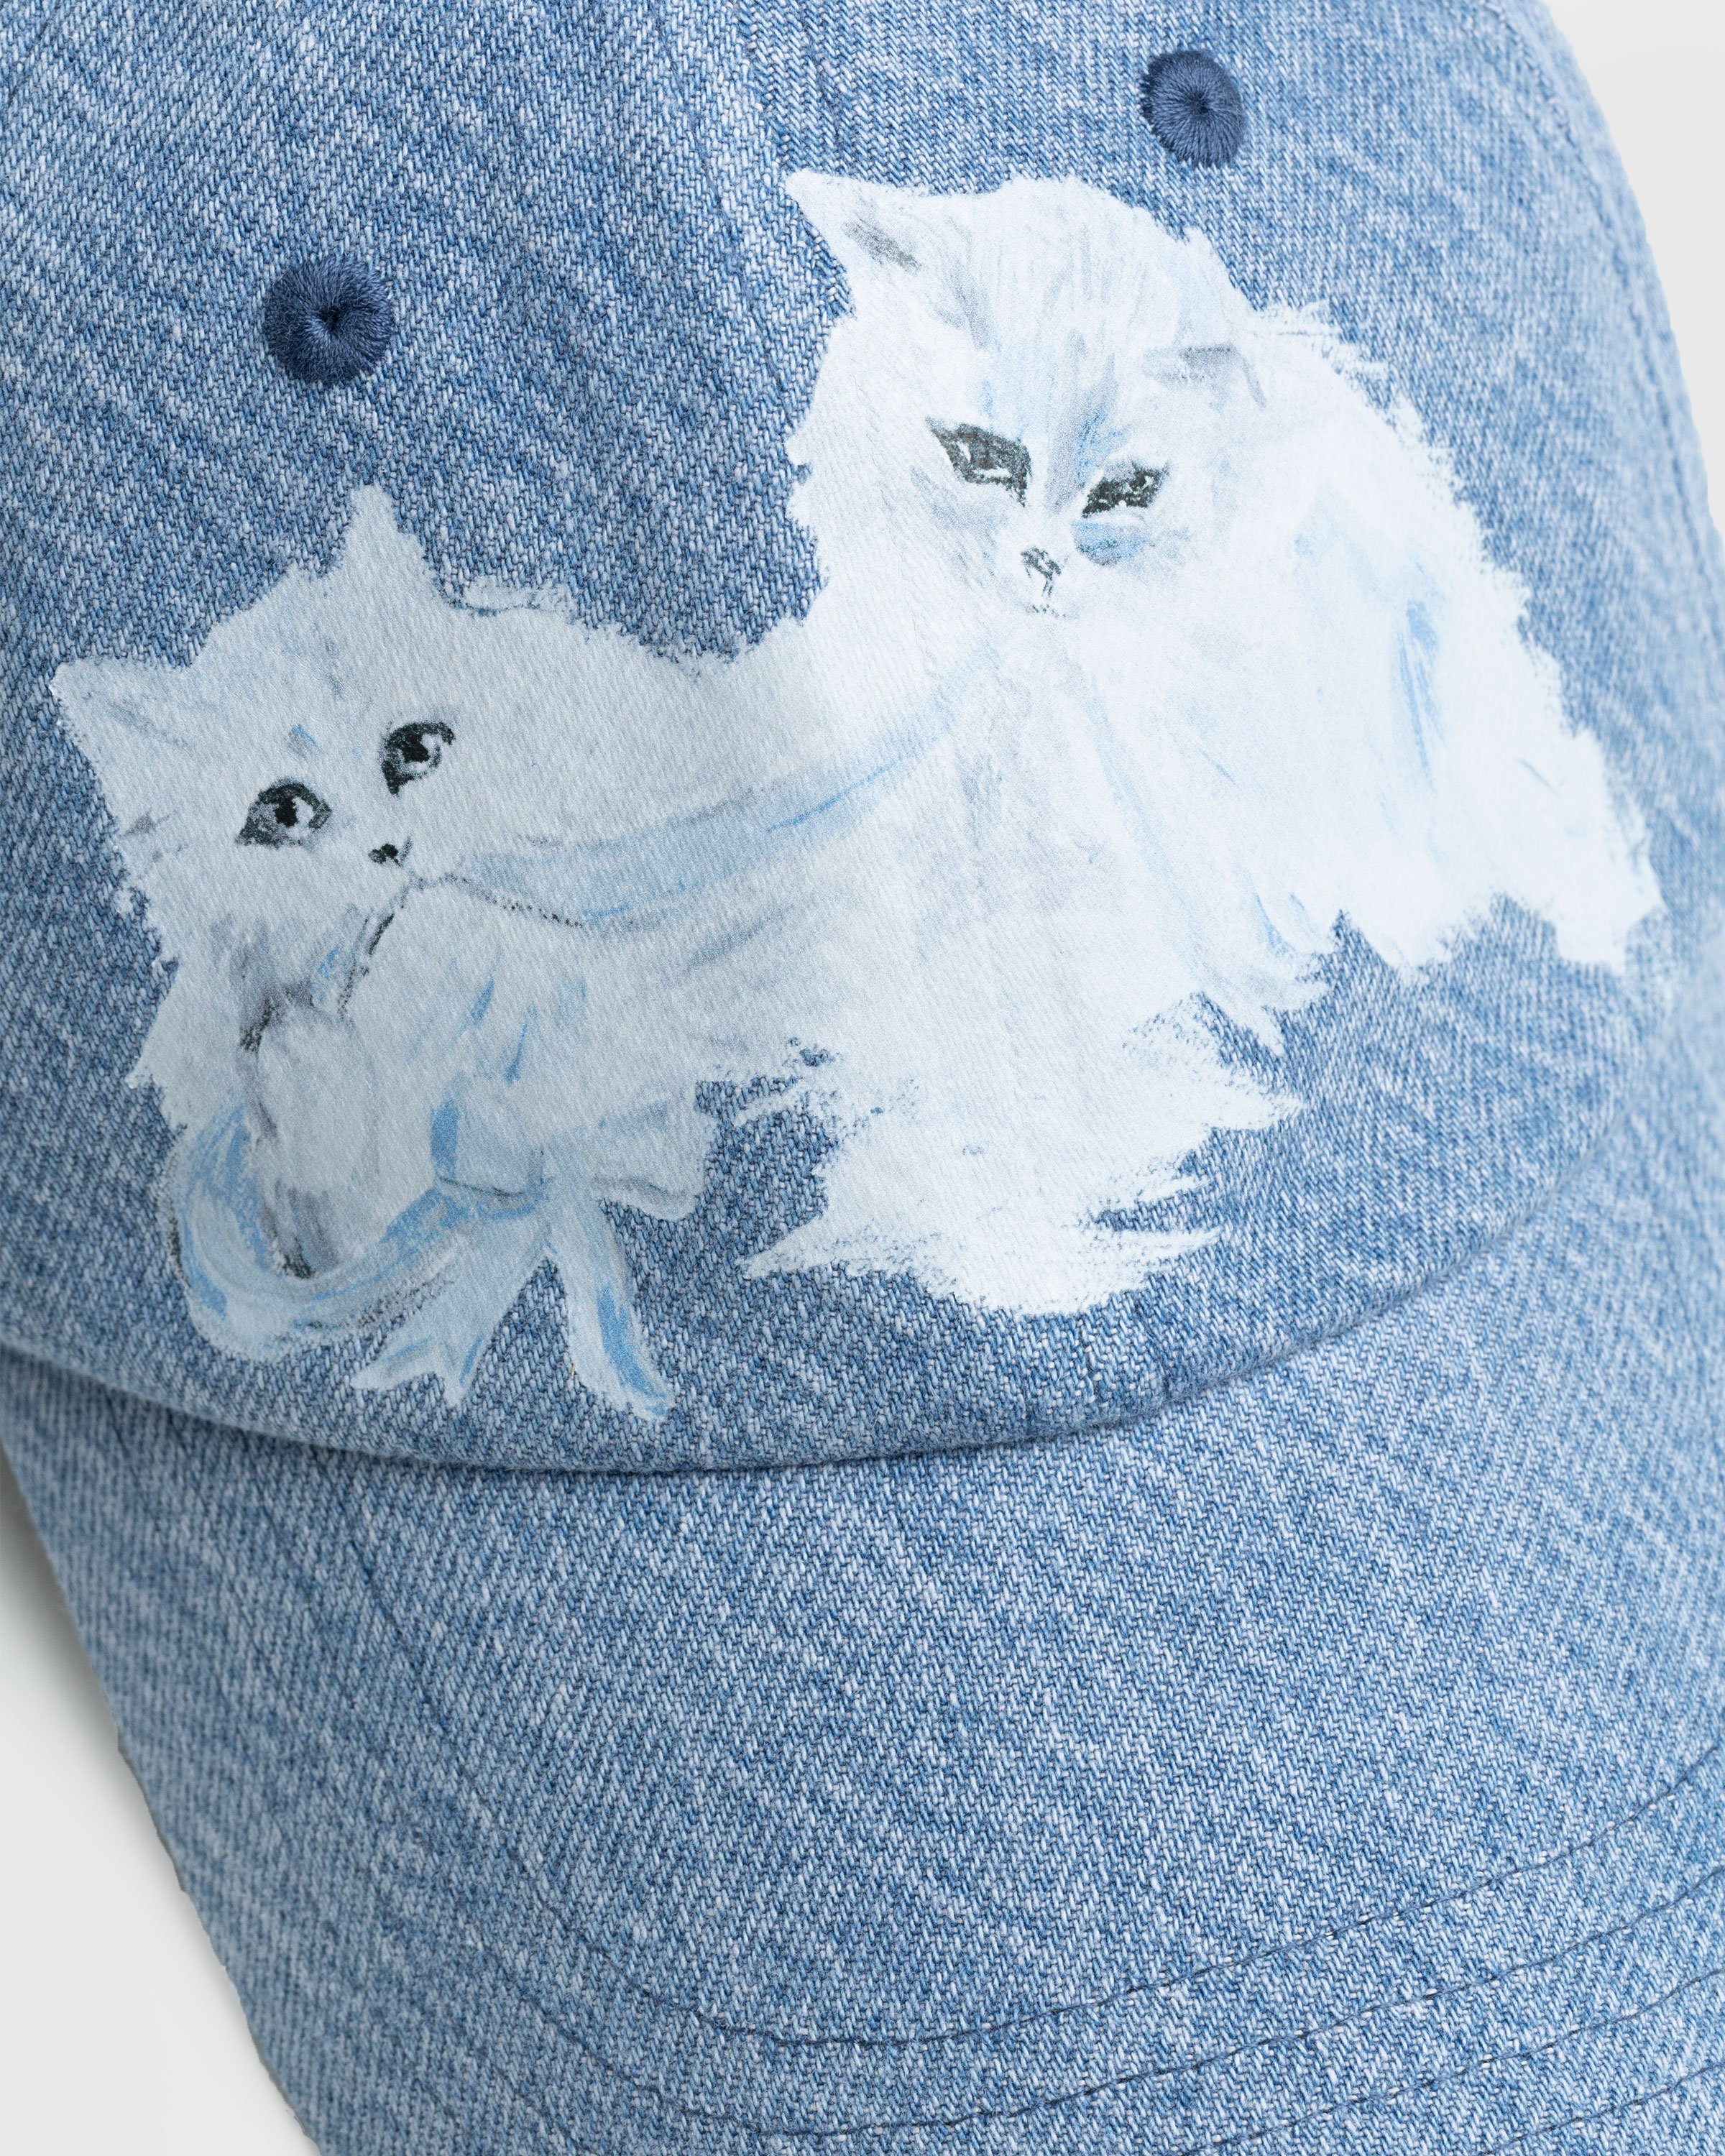 Acne Studios - Cat Print Denim Cap Blue - Accessories - Blue - Image 4